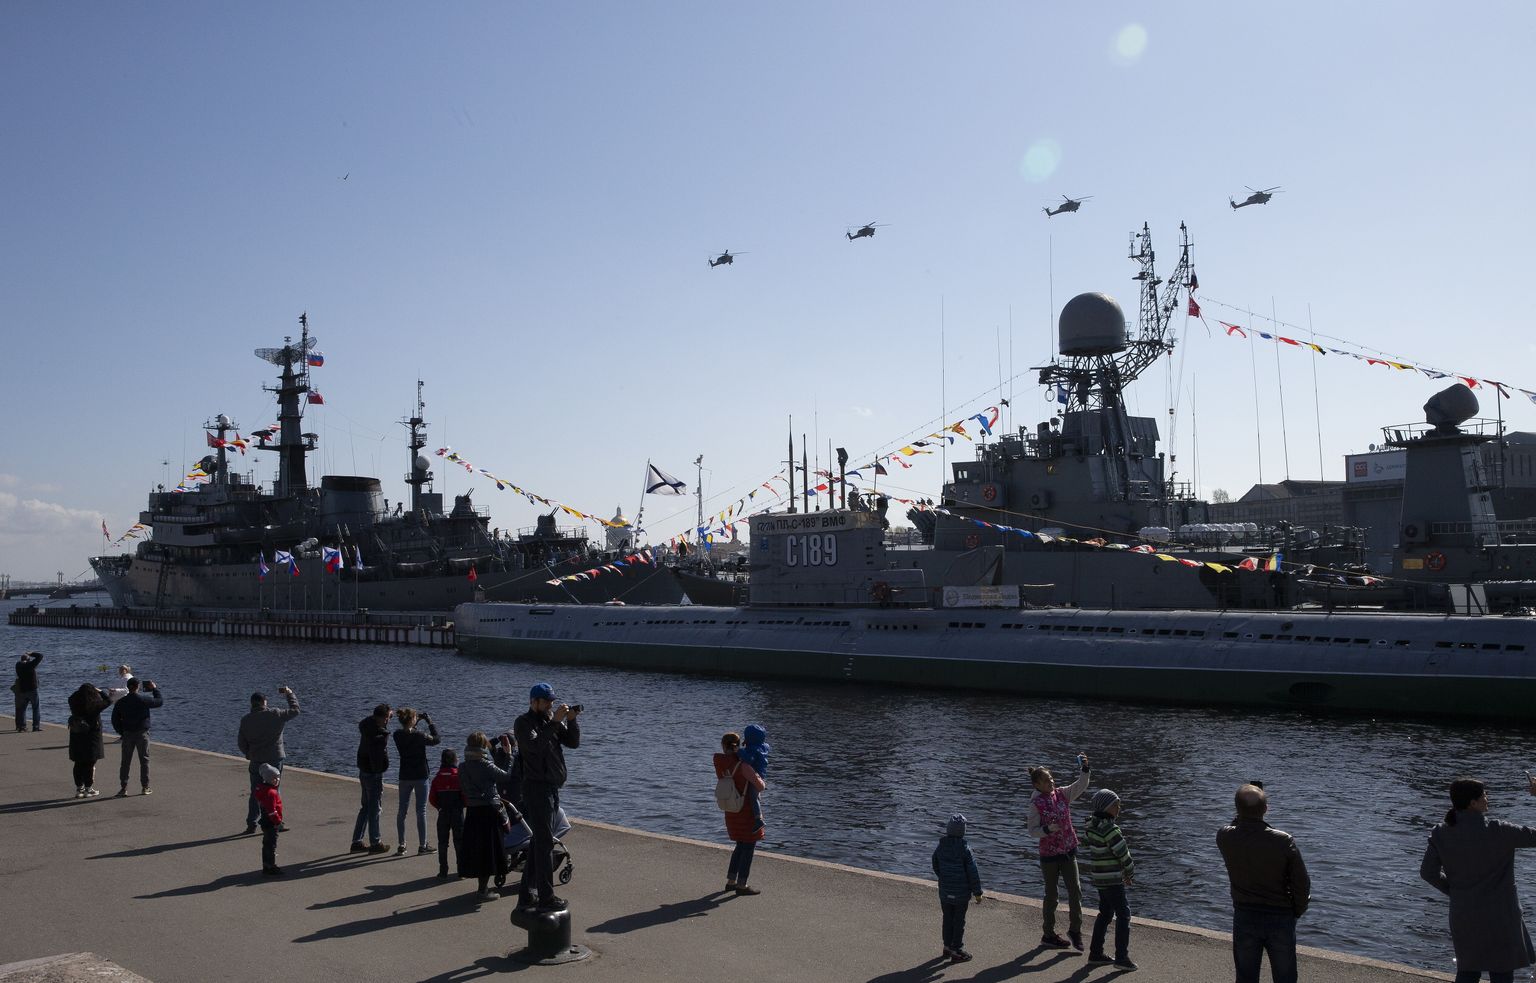 Фрегат "Казанец" в порту Санкт-Петербурга